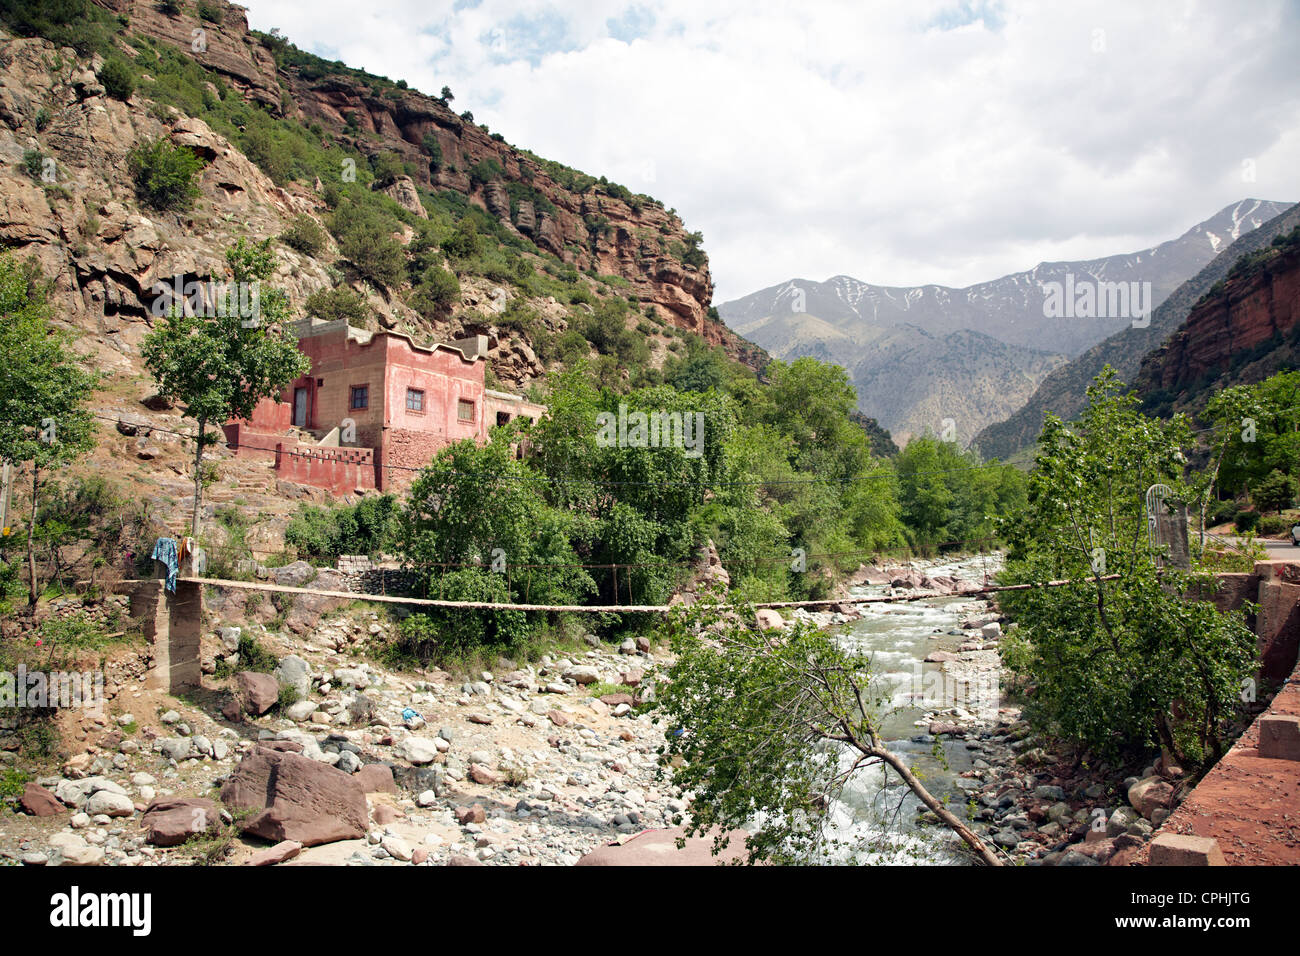 Maison berbère dans les montagnes de l'Atlas Maroc Banque D'Images